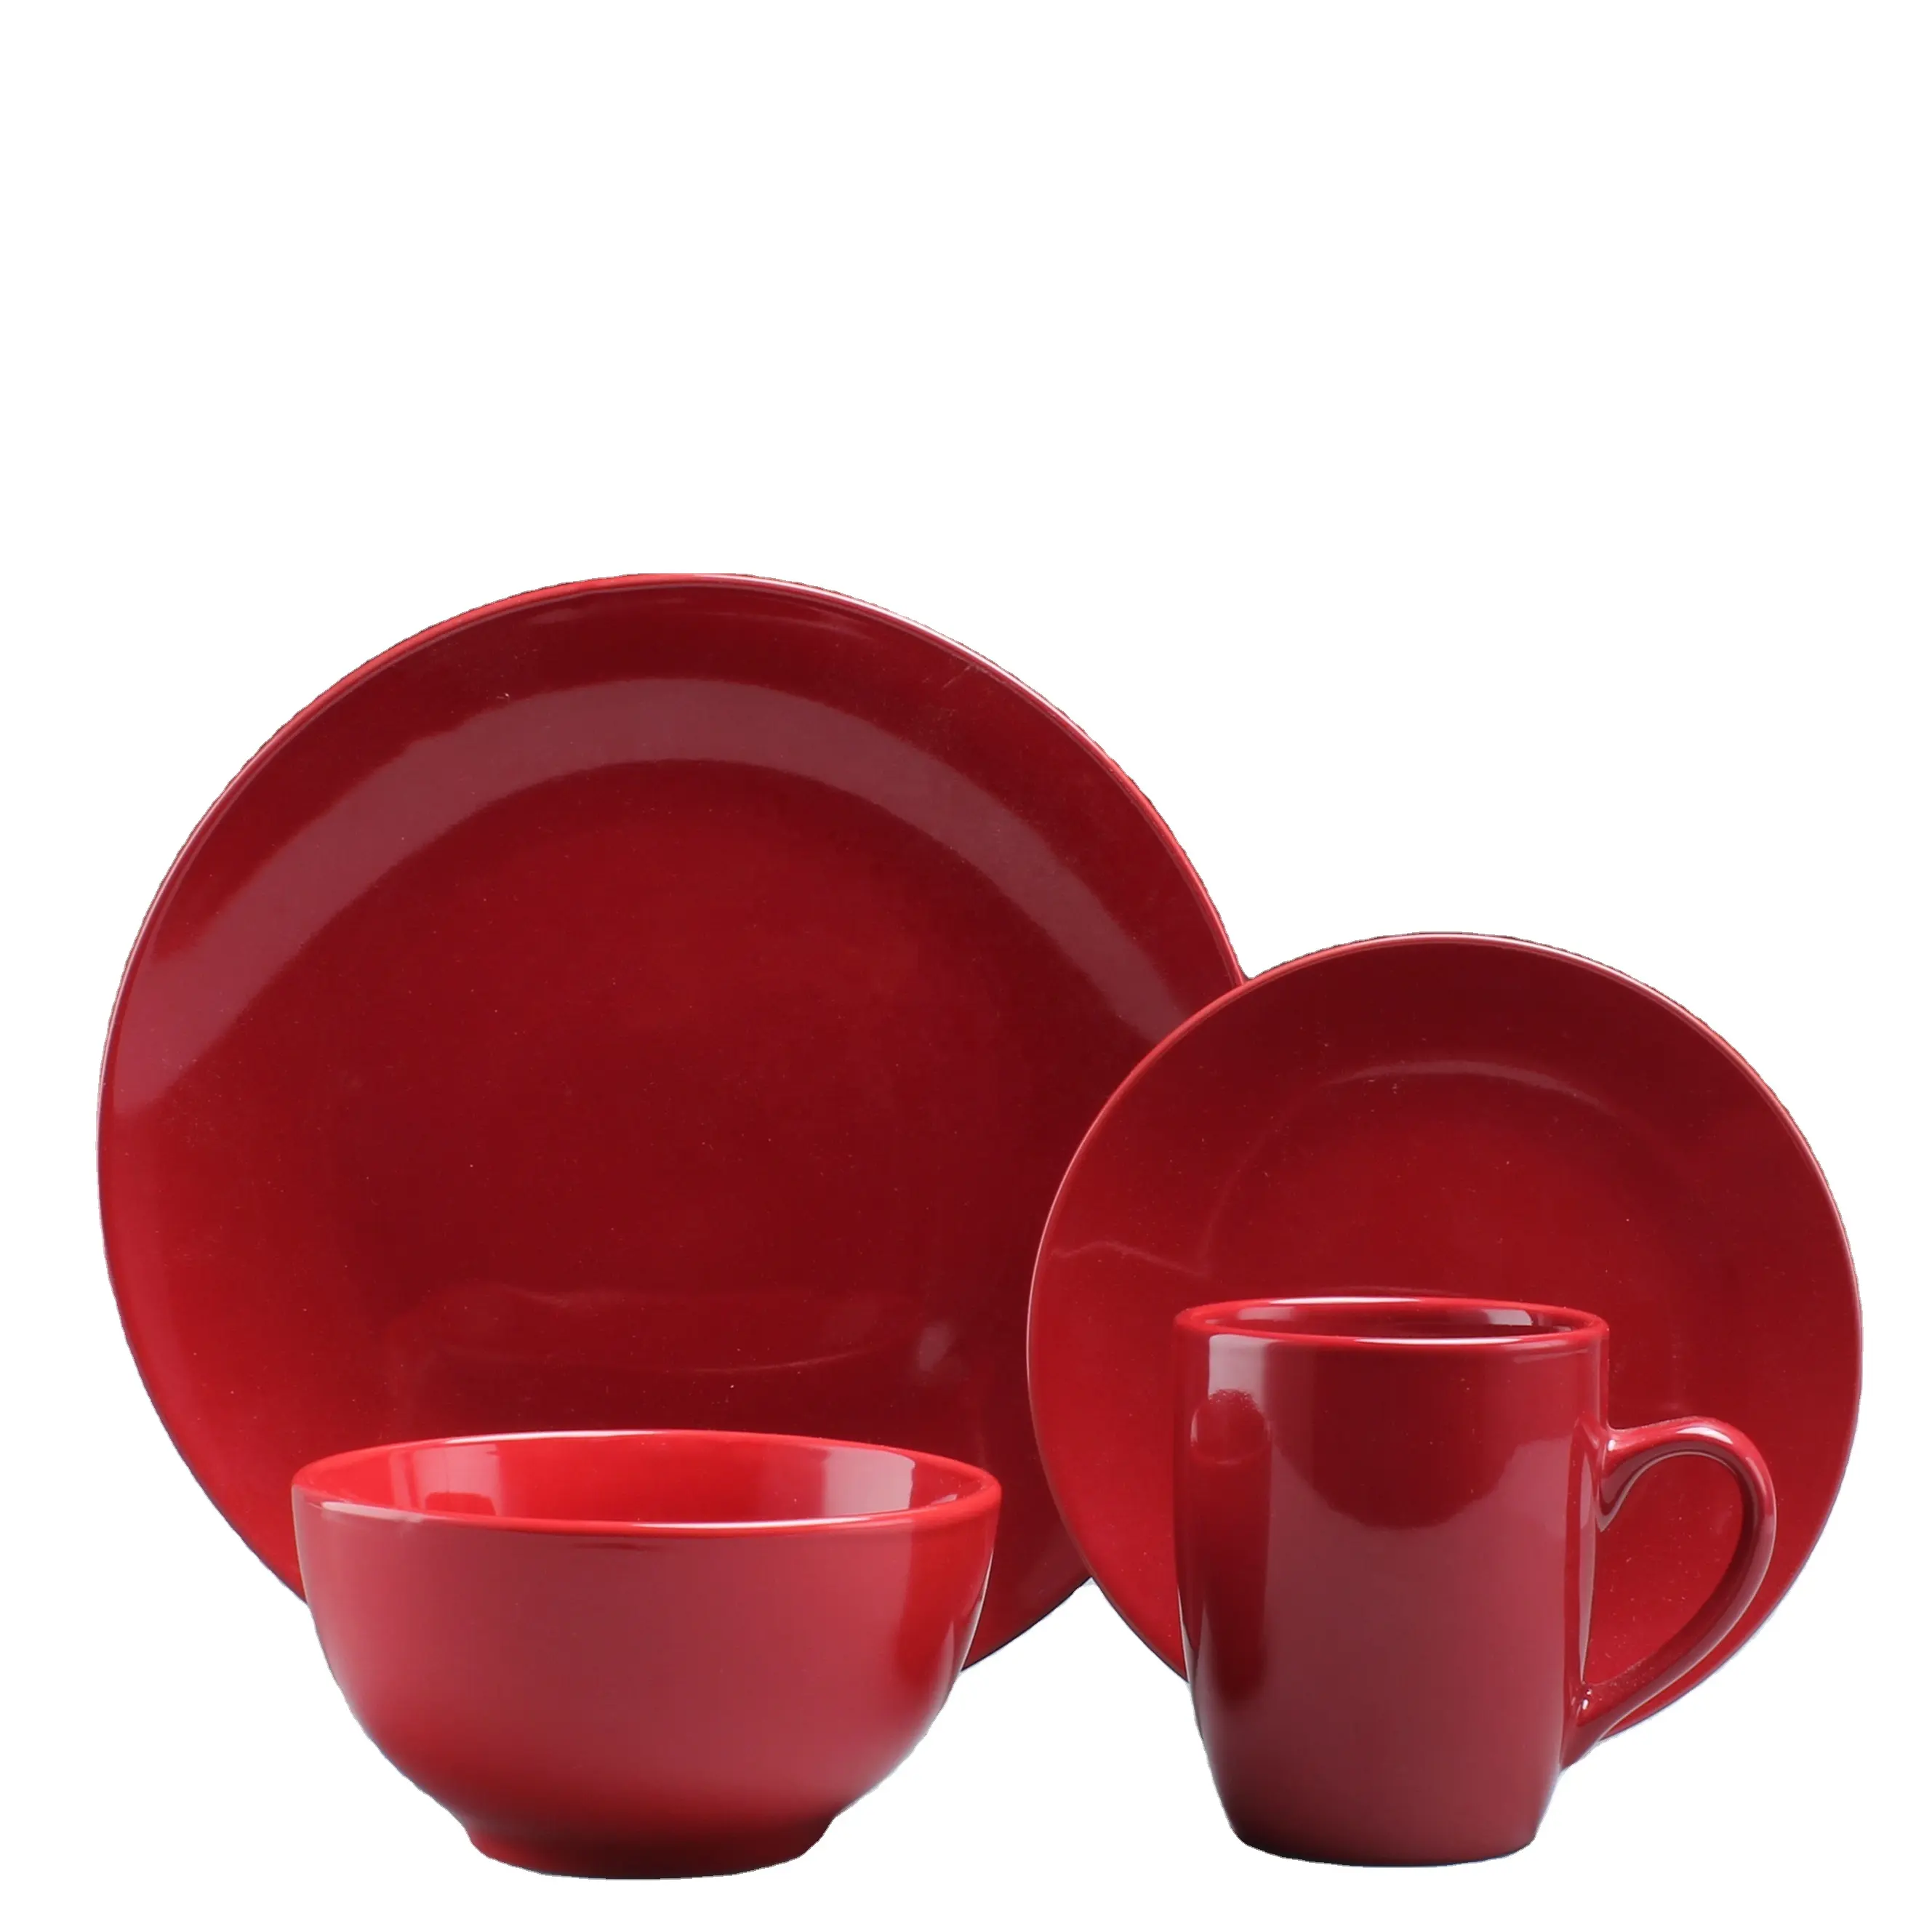 16 шт. керамические наборы посуды с красным цветом глазури дизайн керамическая посуда для оптовой продажи